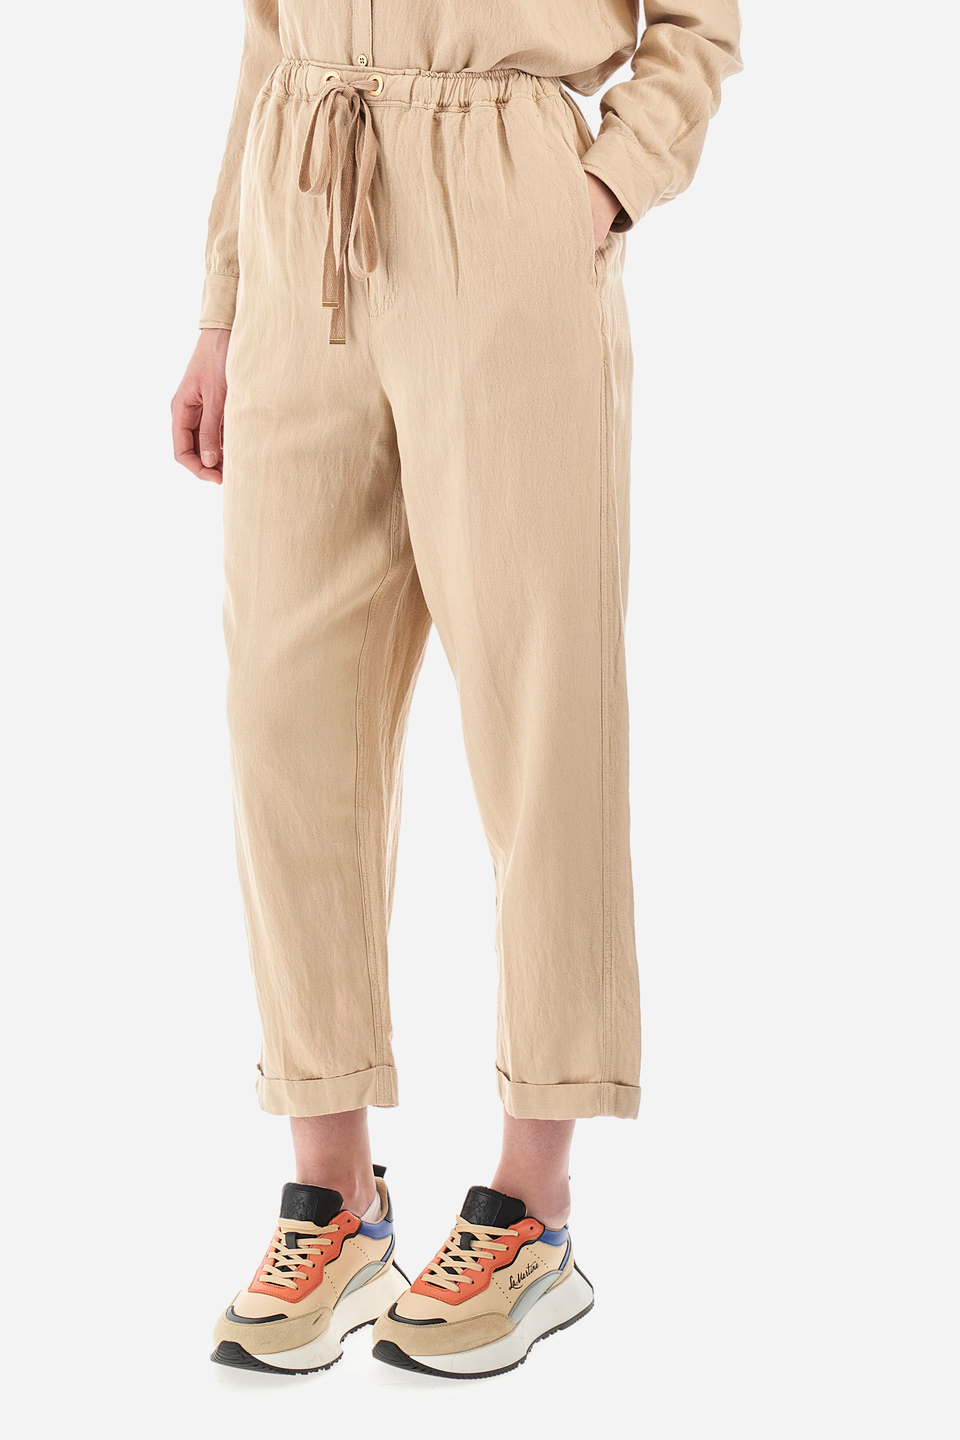 Buy Peach Premium Cotton-Linen Men's Trousers